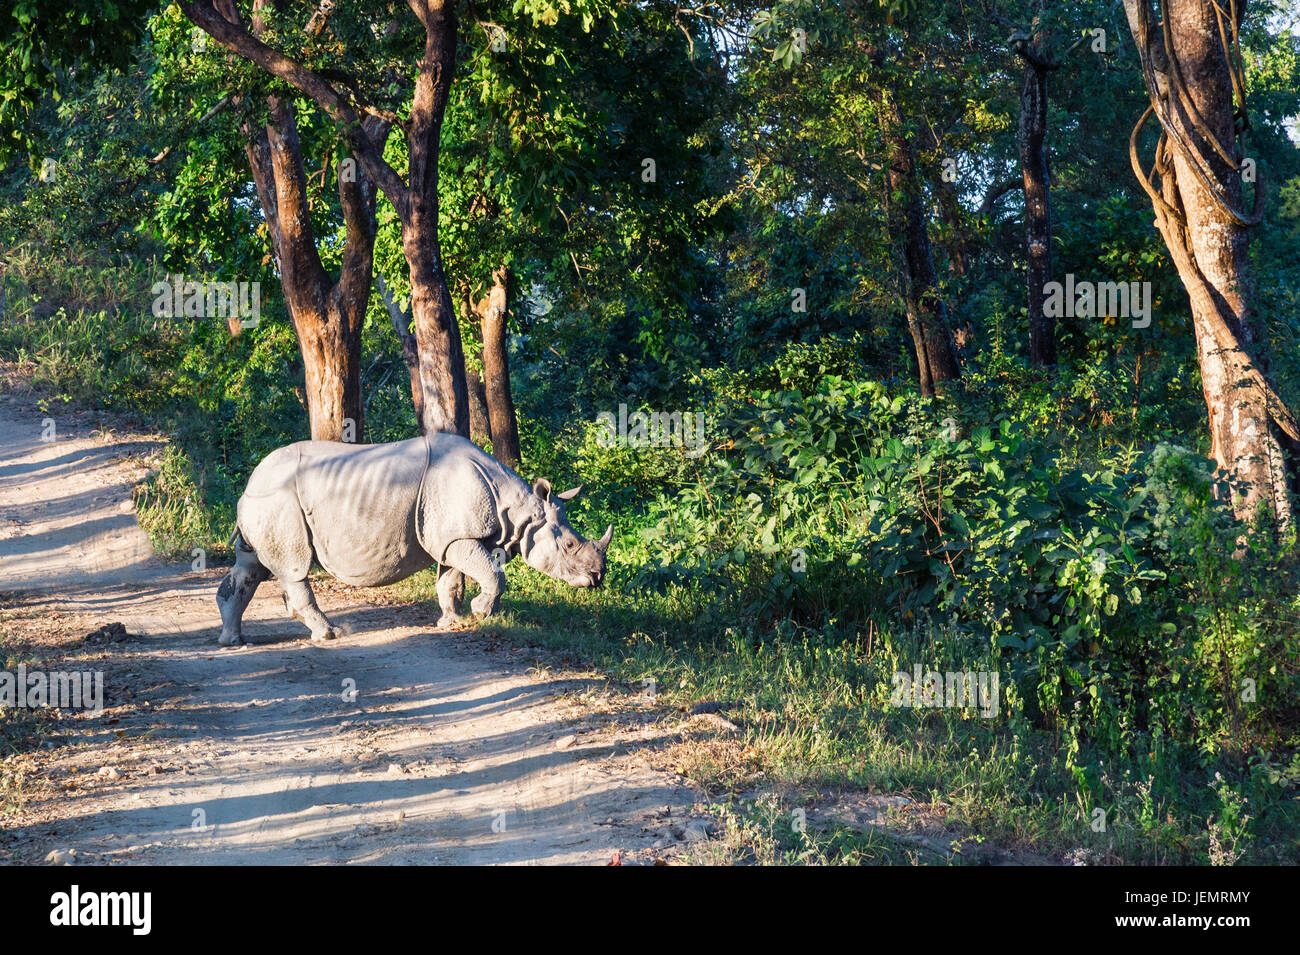 Il rinoceronte indiano (Rhinoceros unicornis) attraversando una strada forestale, il Parco Nazionale di Kaziranga, Assam, India Foto Stock